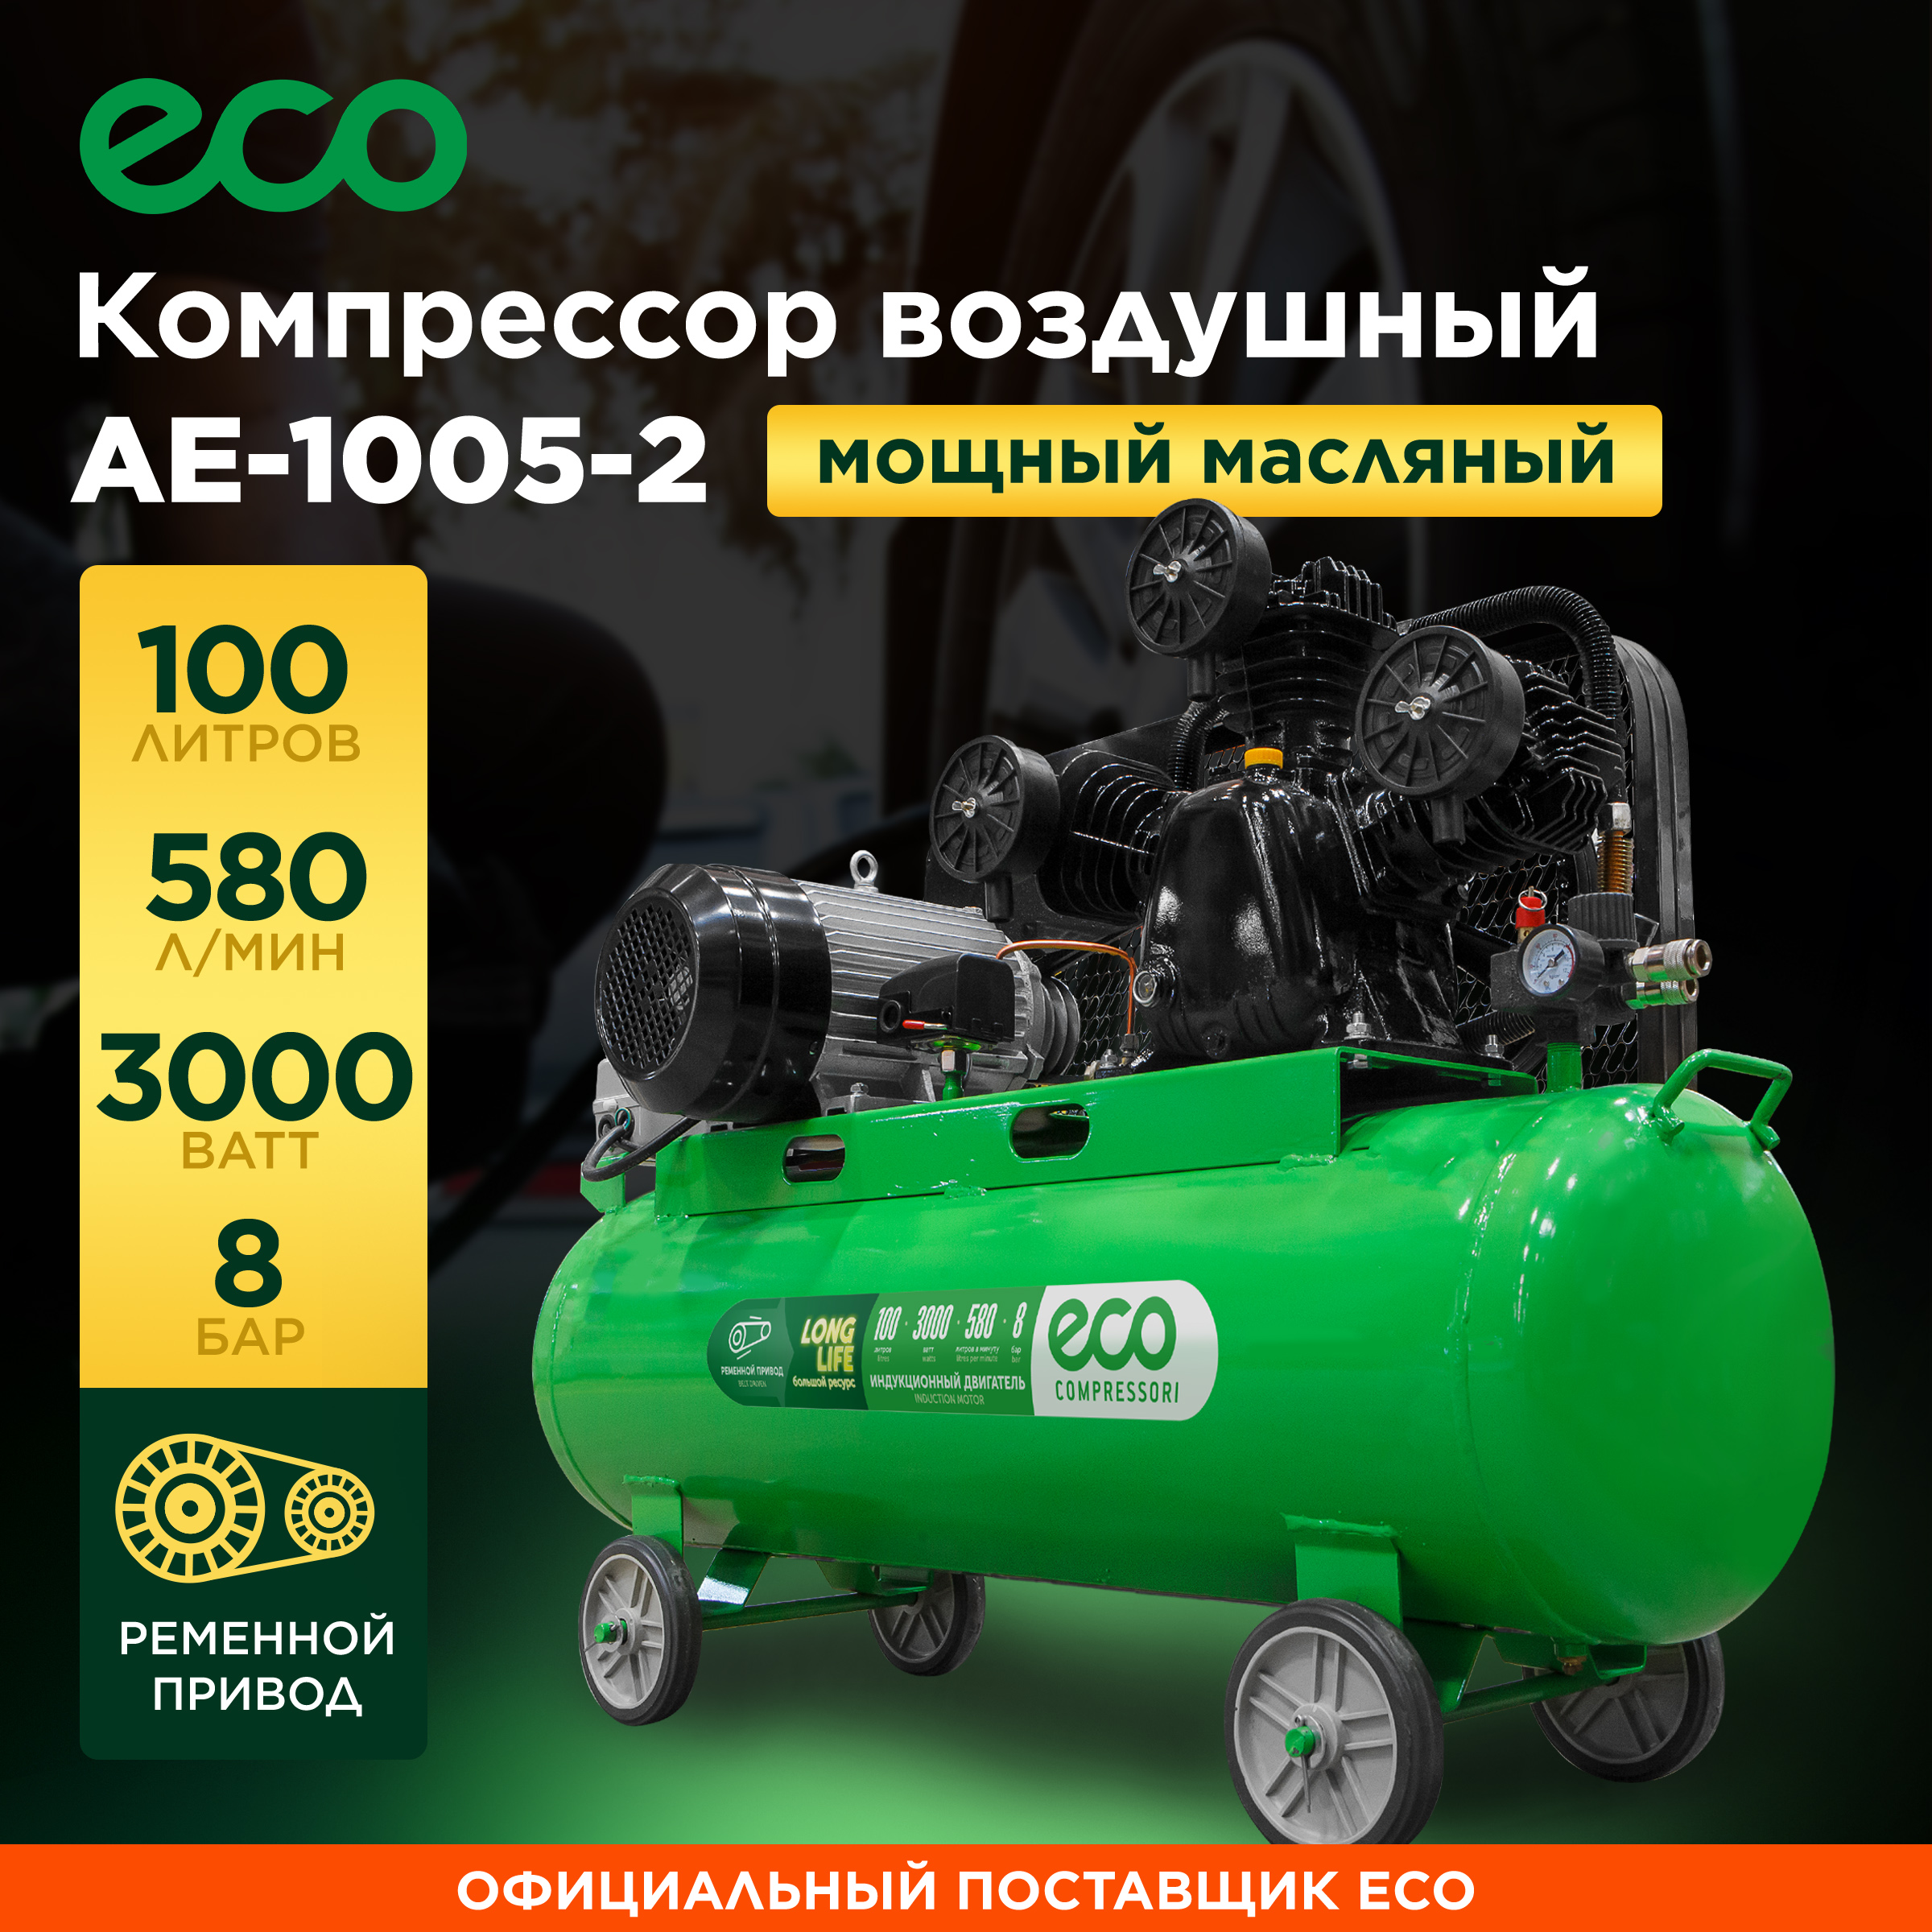 компрессор воздушный масляный eco ae 1005 в1 Компрессор воздушный масляный ECO AE-1005-2